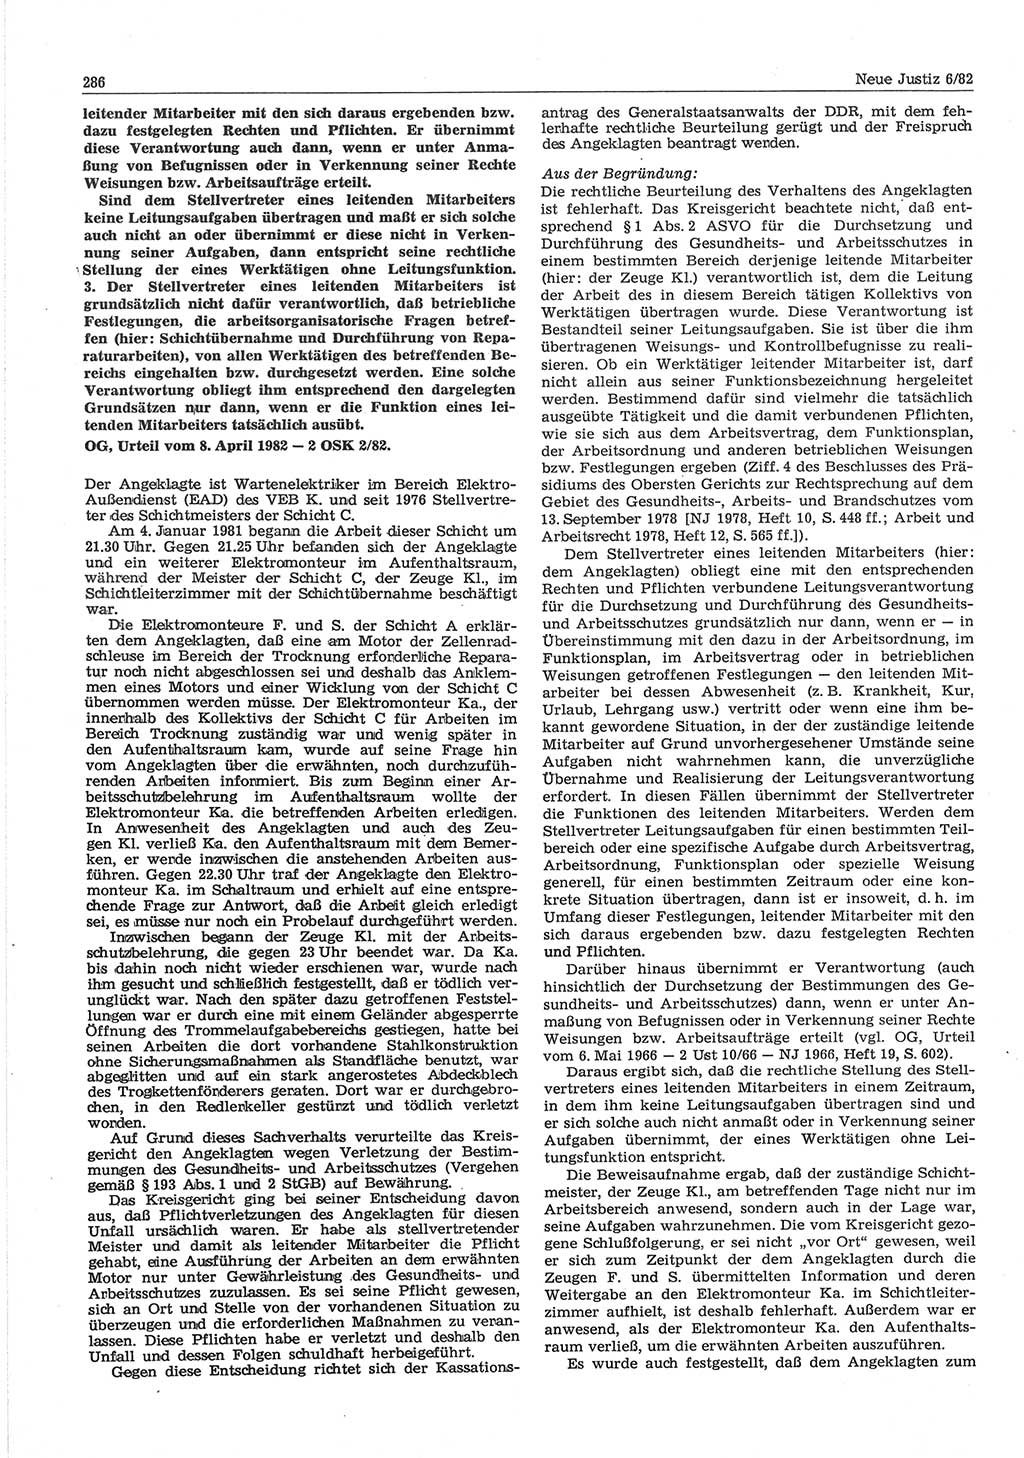 Neue Justiz (NJ), Zeitschrift für sozialistisches Recht und Gesetzlichkeit [Deutsche Demokratische Republik (DDR)], 36. Jahrgang 1982, Seite 286 (NJ DDR 1982, S. 286)